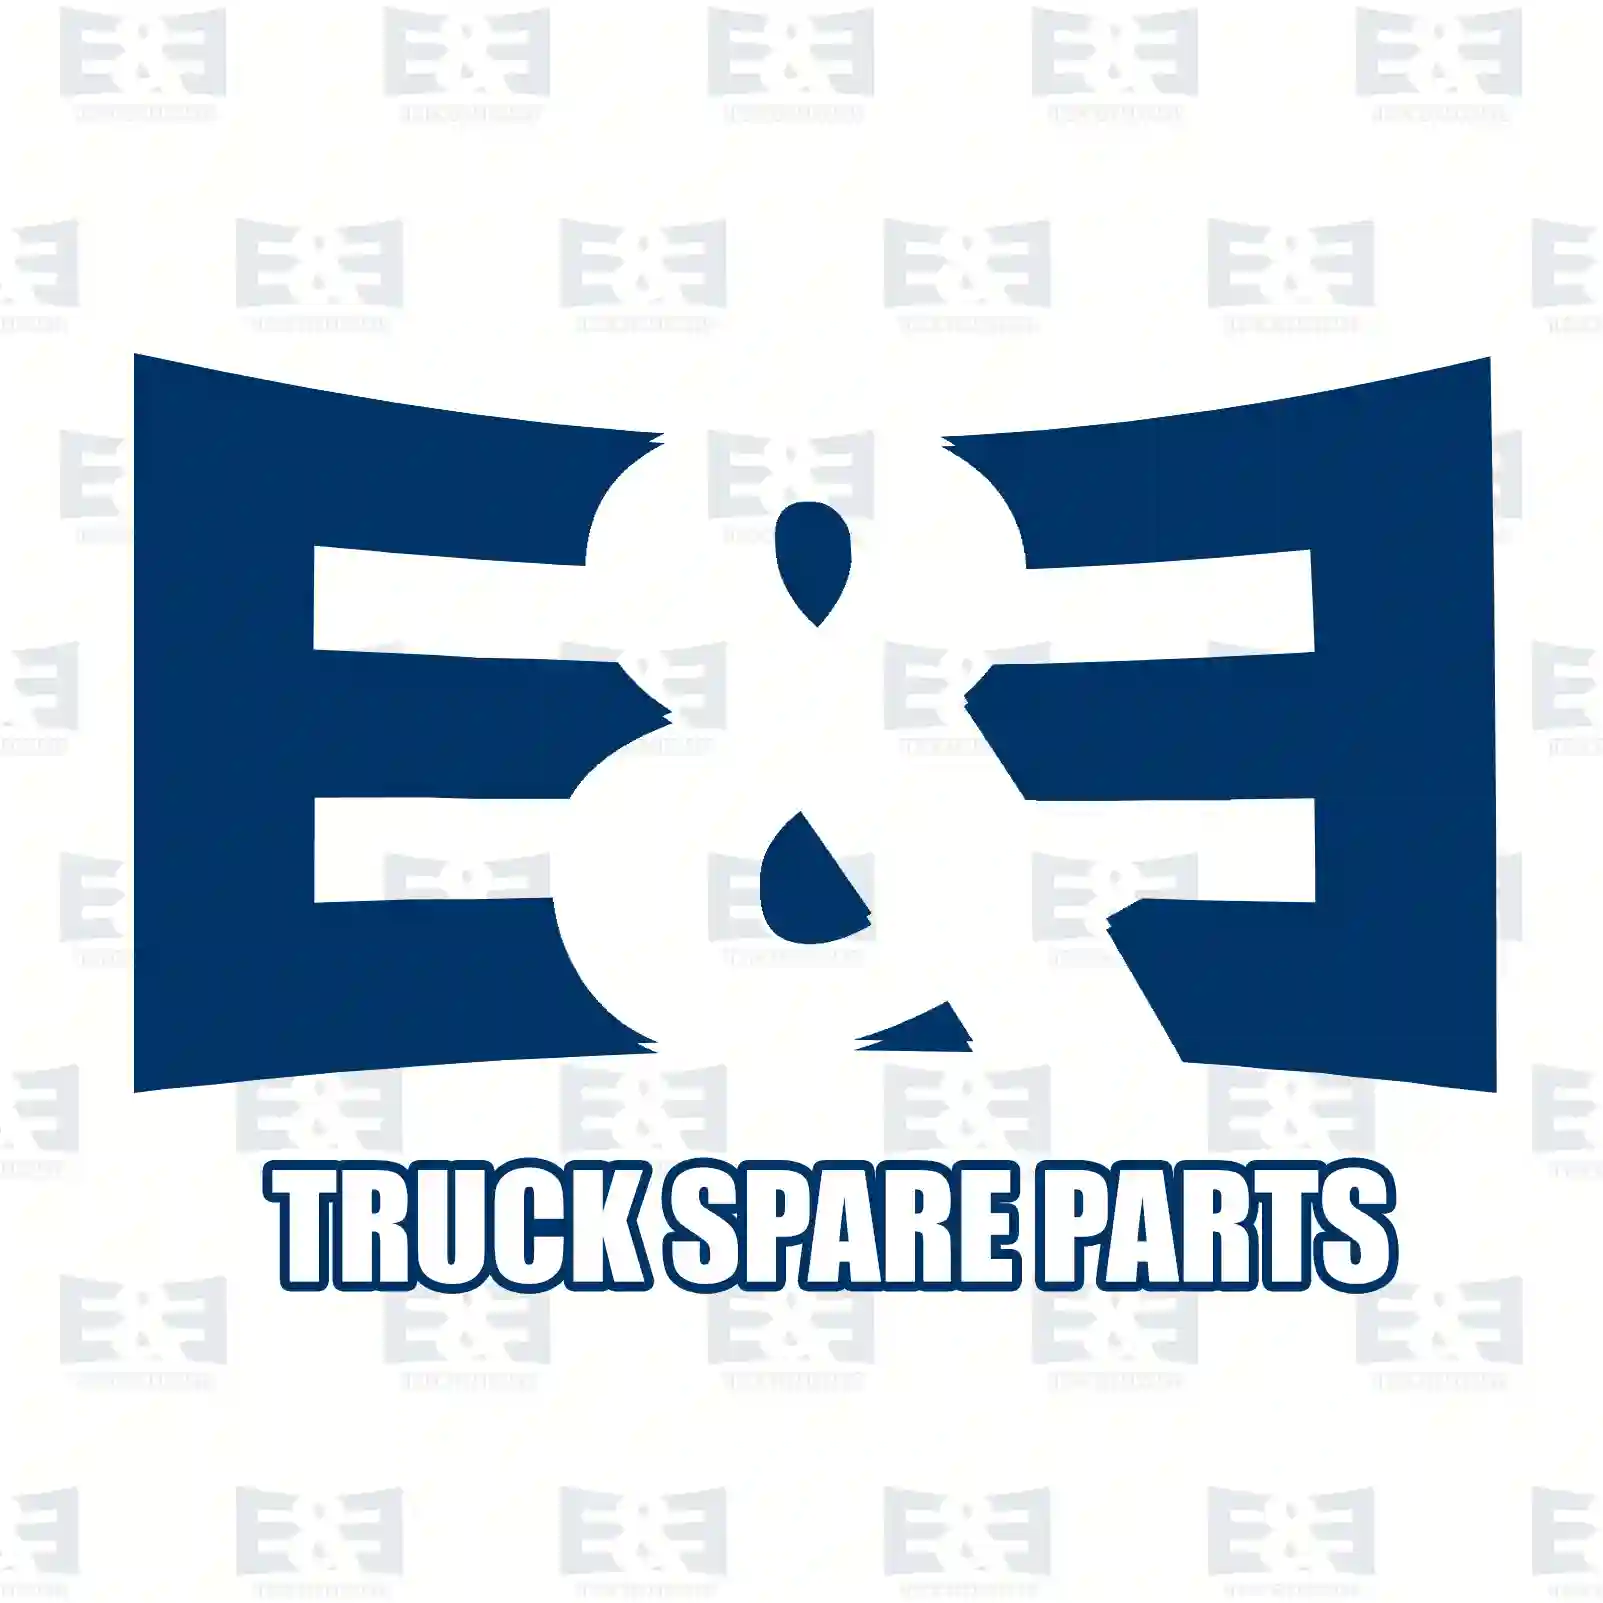 O-ring, 2E2285401, 42537782, 7408171082, 8171082 ||  2E2285401 E&E Truck Spare Parts | Truck Spare Parts, Auotomotive Spare Parts O-ring, 2E2285401, 42537782, 7408171082, 8171082 ||  2E2285401 E&E Truck Spare Parts | Truck Spare Parts, Auotomotive Spare Parts